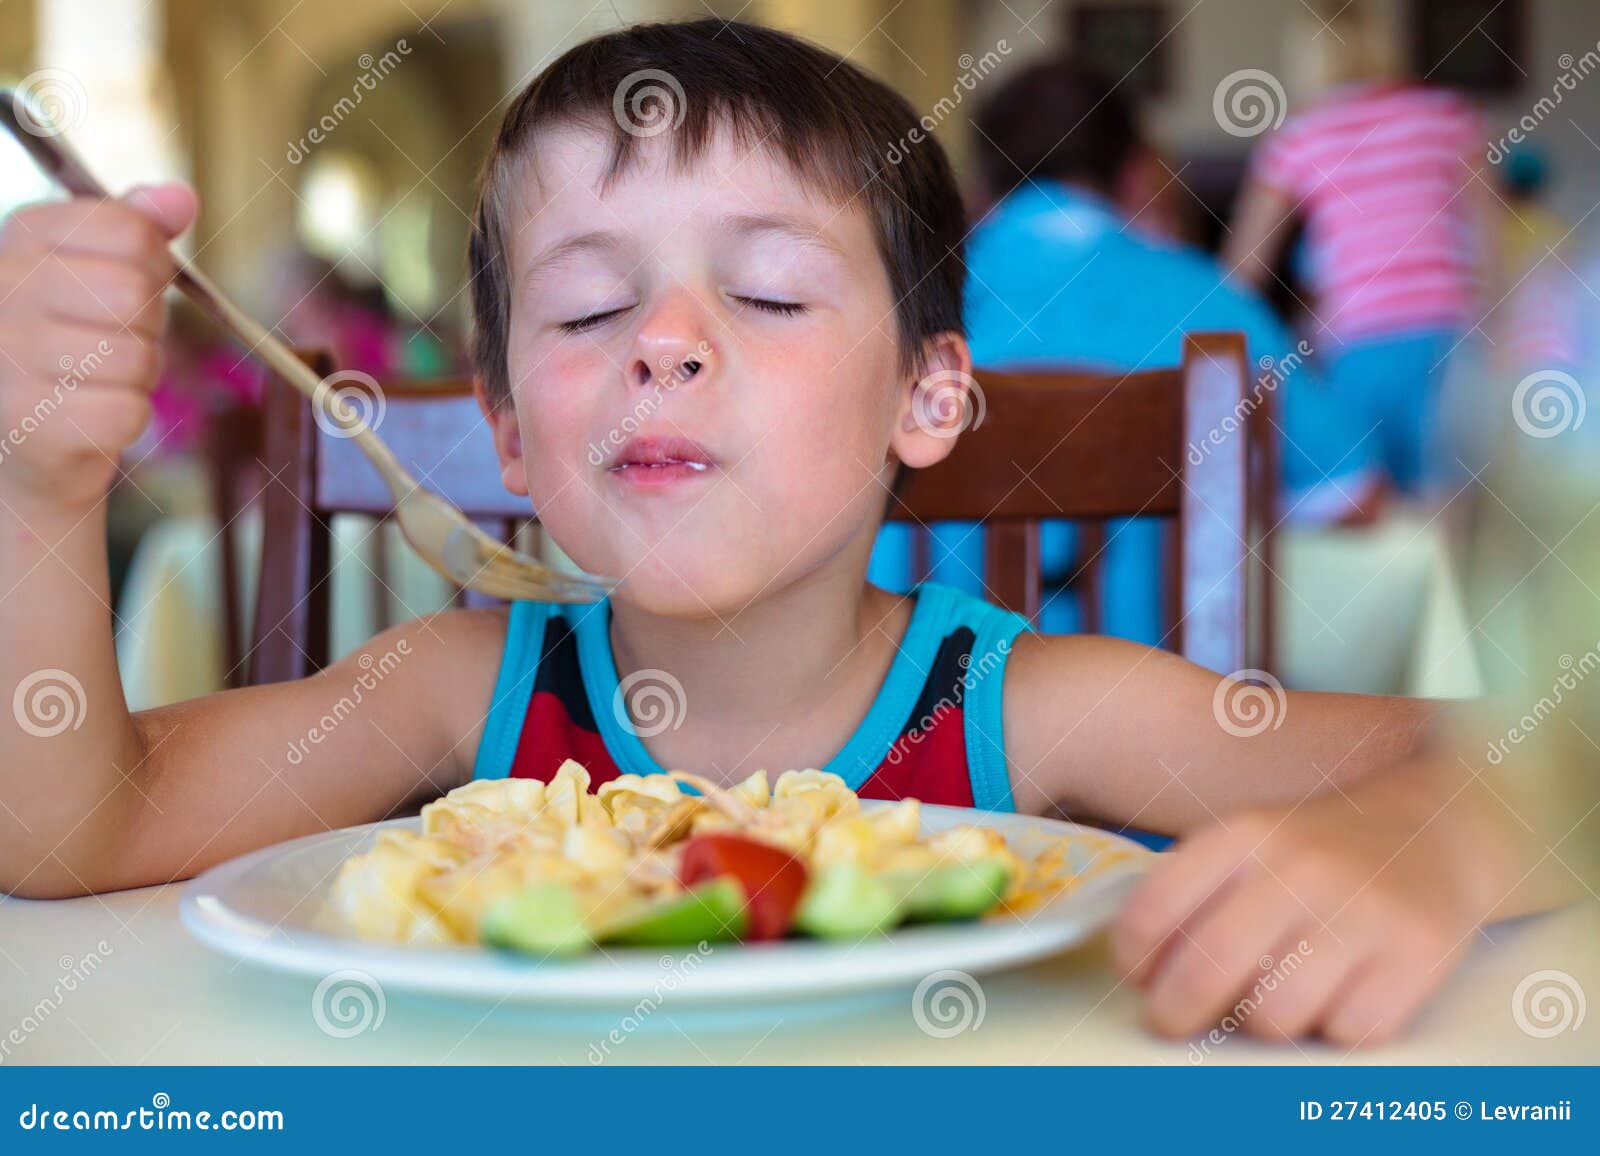 cute little boy enjoying food